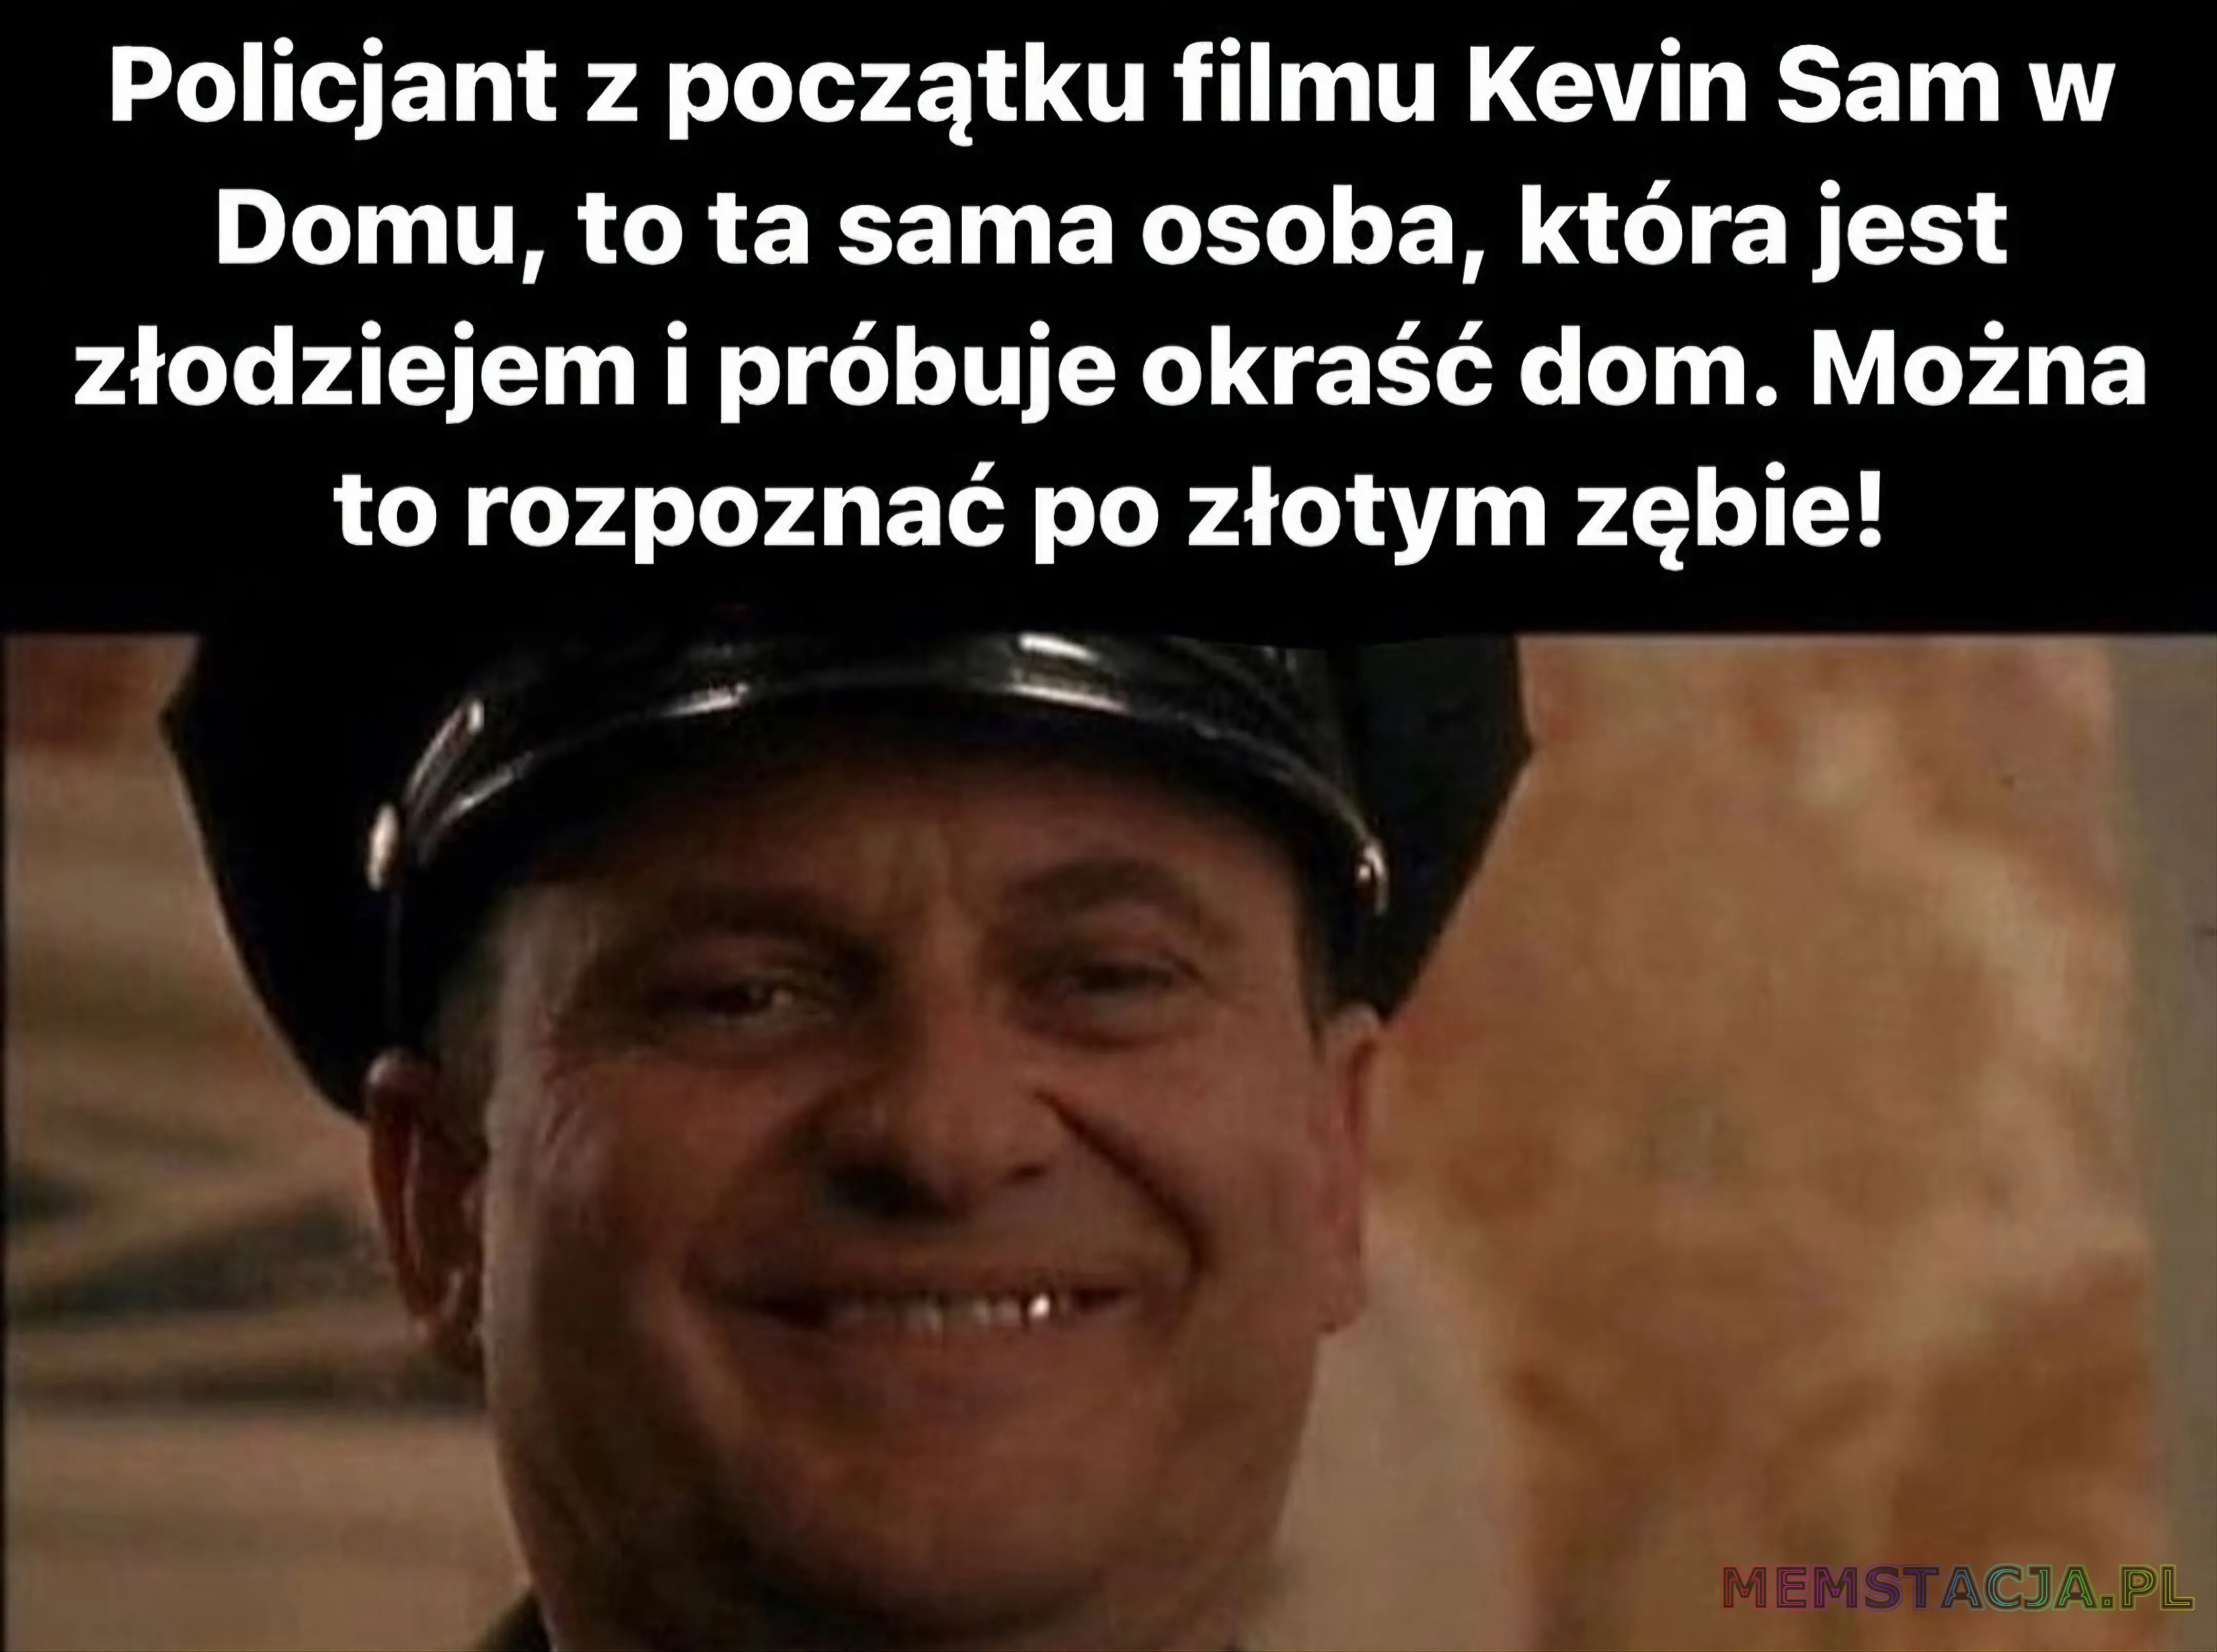 Mem przedstawiający postać Policjanta: 'Policjant z początku filmu Kevin Sam w Domu, to ta sama osoba, która jest złodziejem i próbuje okraść dom. Można to rozpoznać po złotym zębie!'